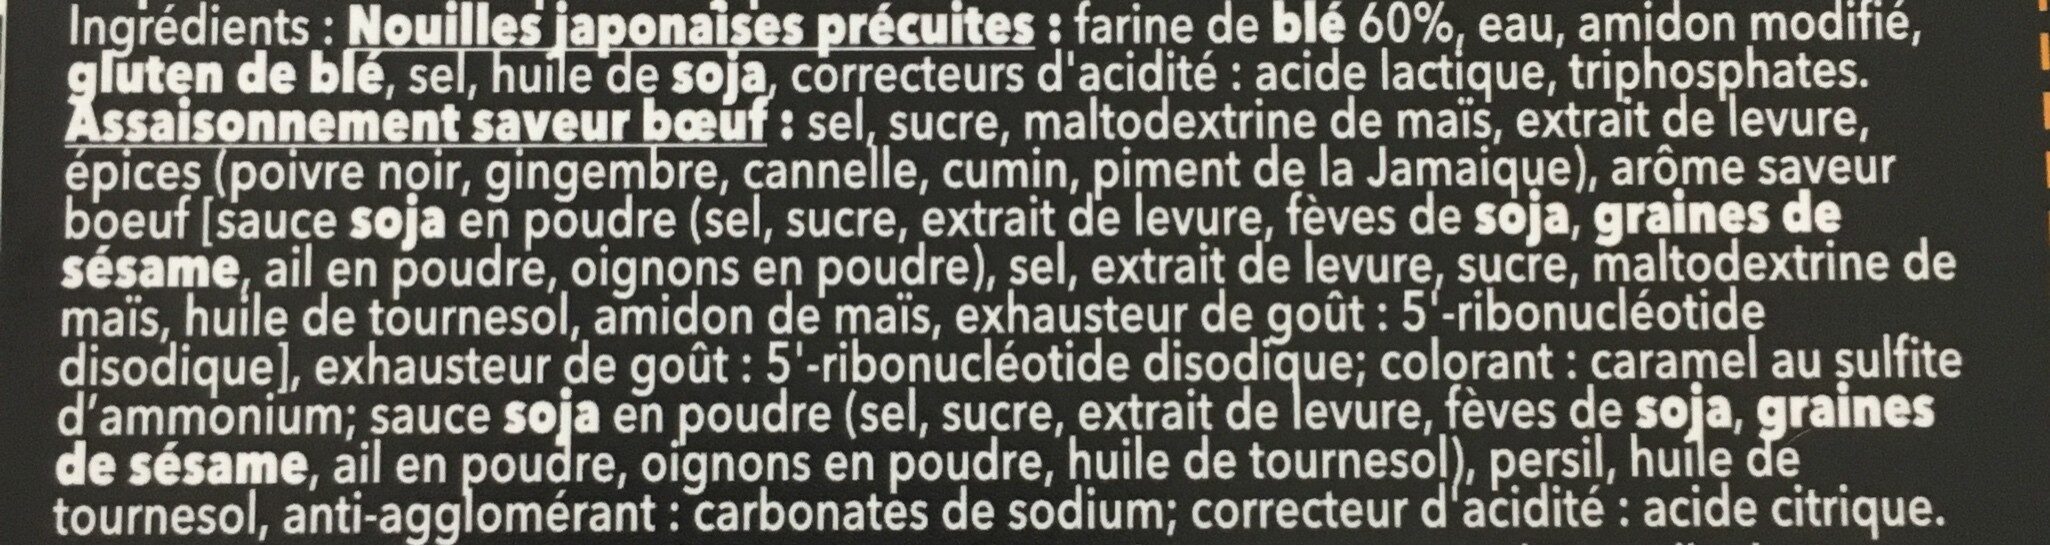 Ramen saveur boeuf - المكونات - fr